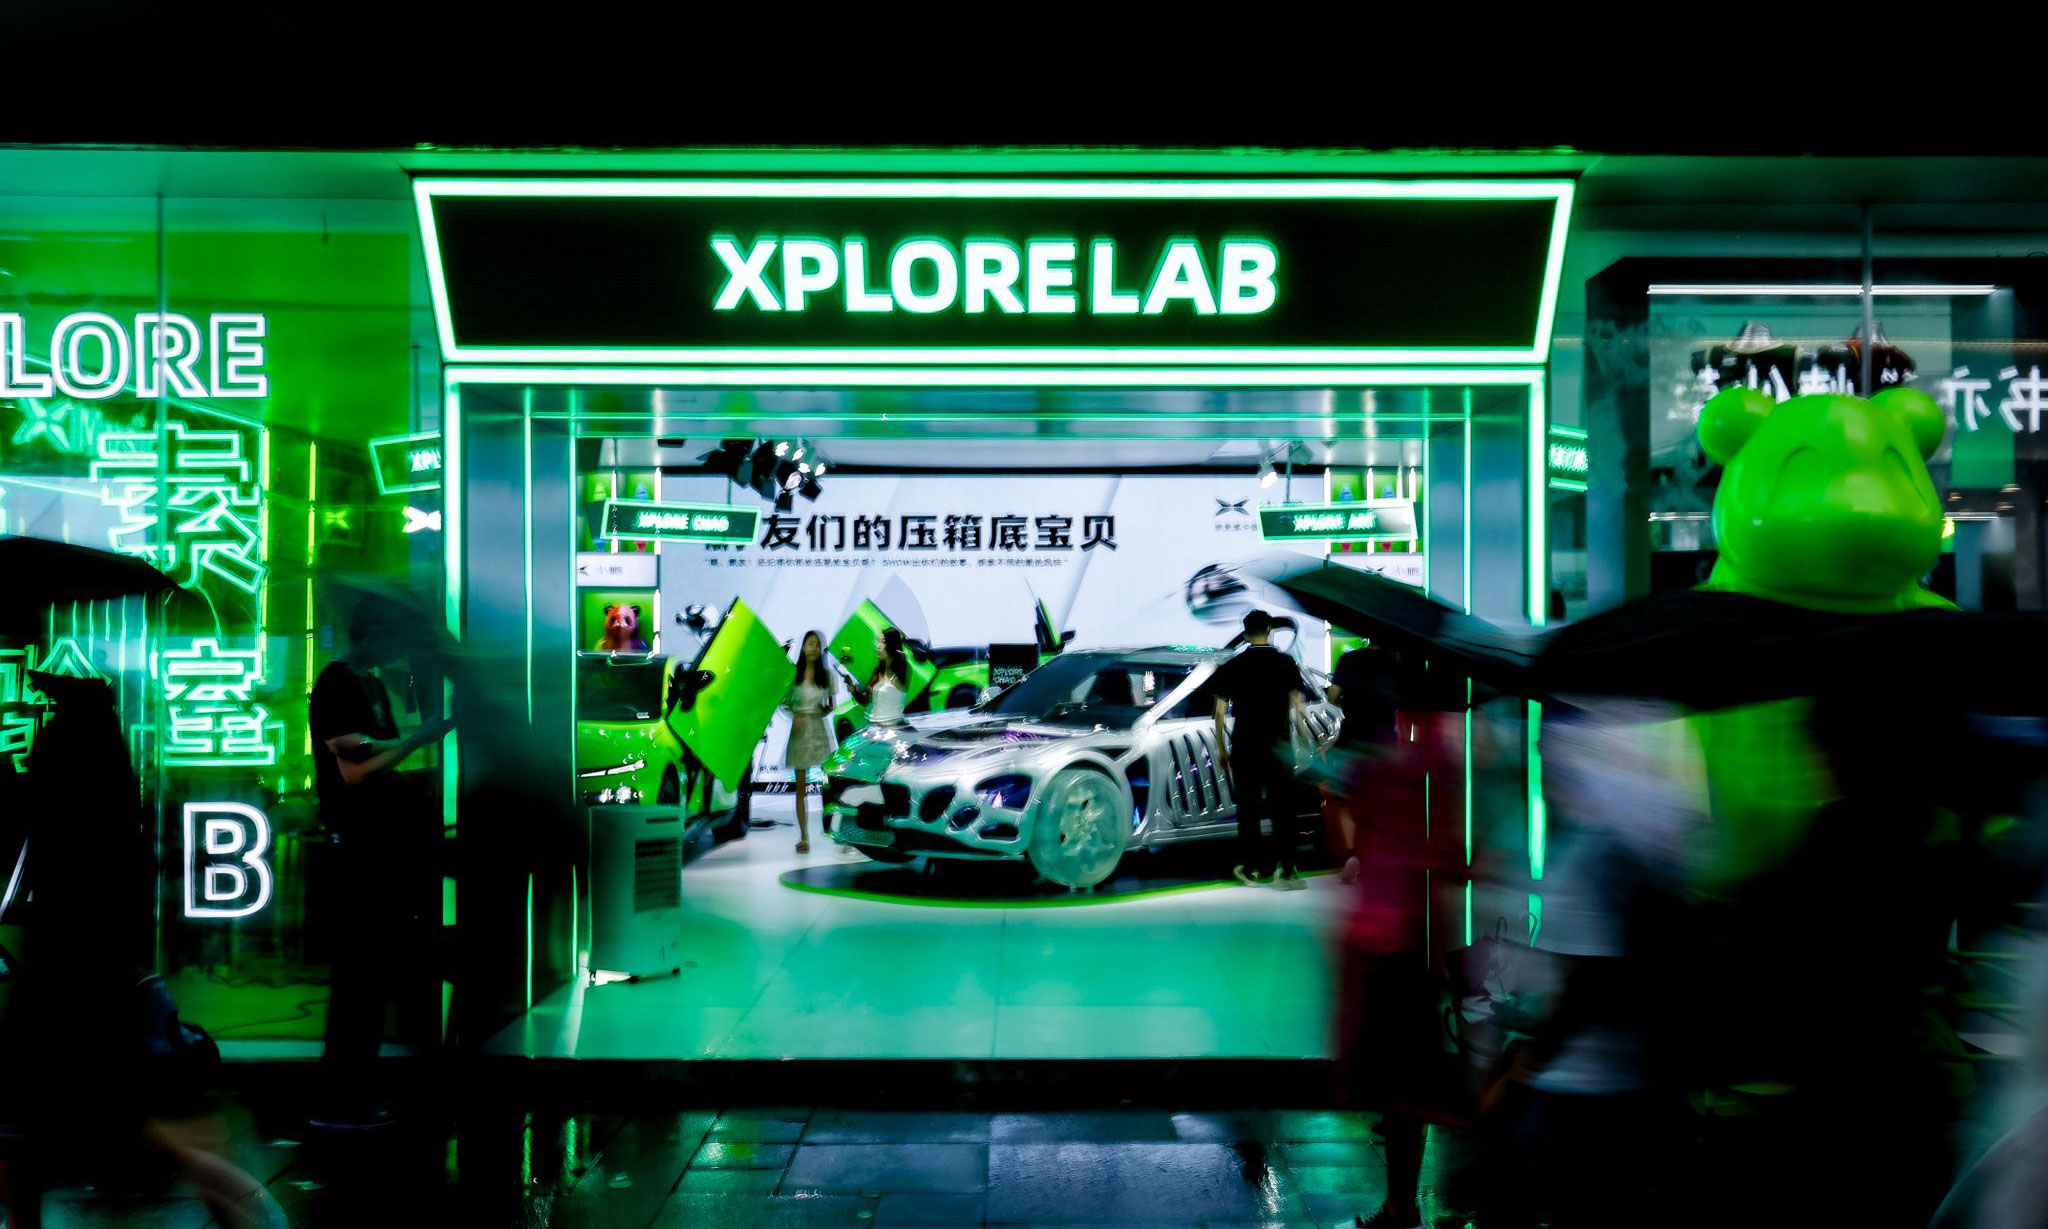 小鹏汽车公司的“XPLORE探索实验室”在成都印石广场落地-Blackwings官网-男士形象改造-穿搭设计顾问-男生发型-素人爆改